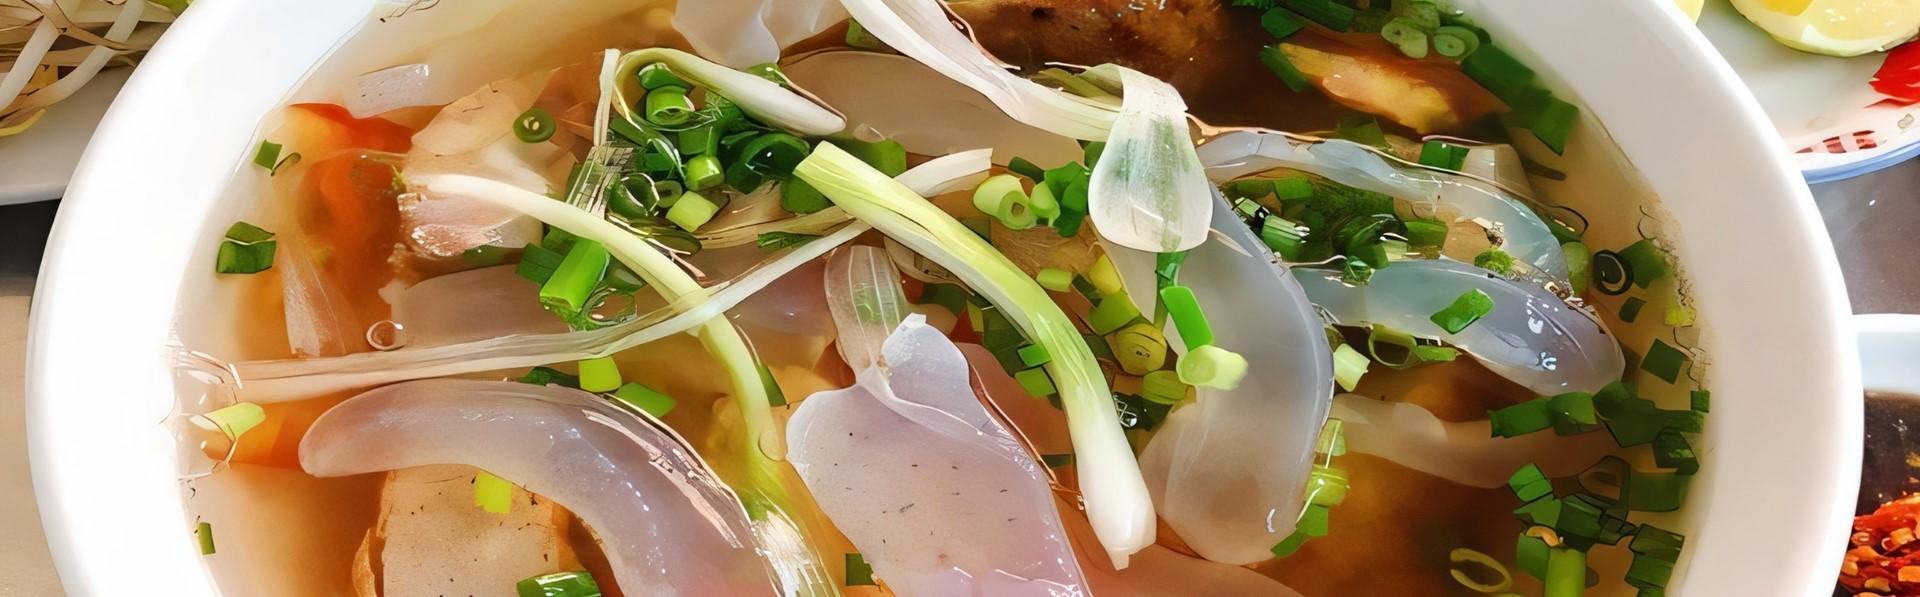 Recette de salade de méduse croquante